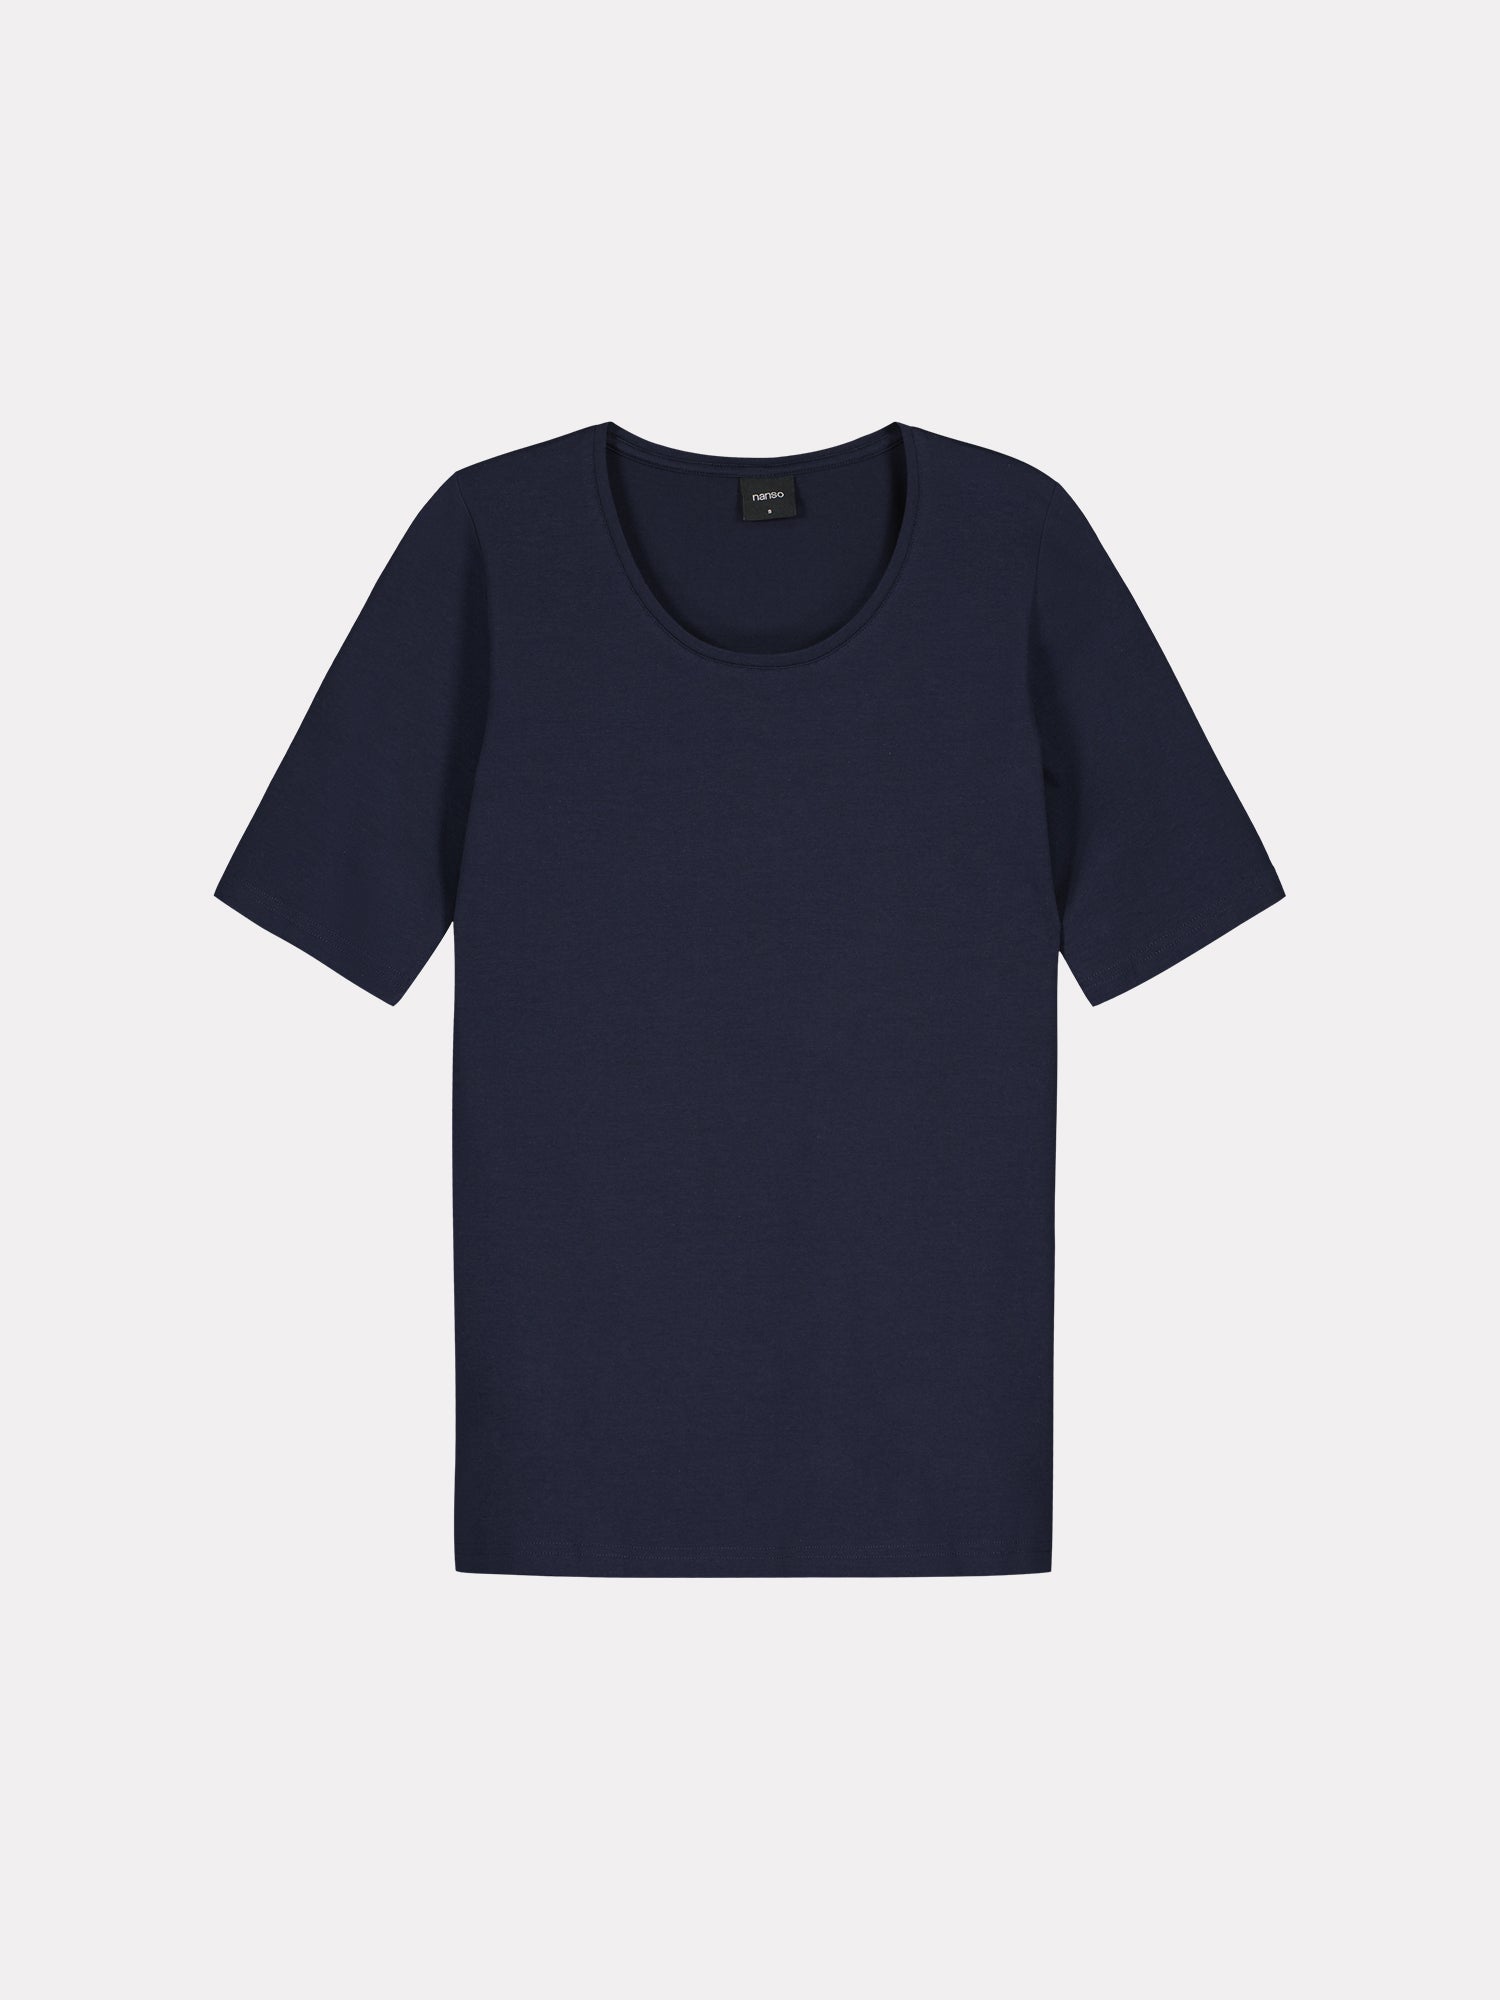 Nanson naisten klassisen tyylikäs tummansininen Basic t-paita pyöreällä pääntiellä.